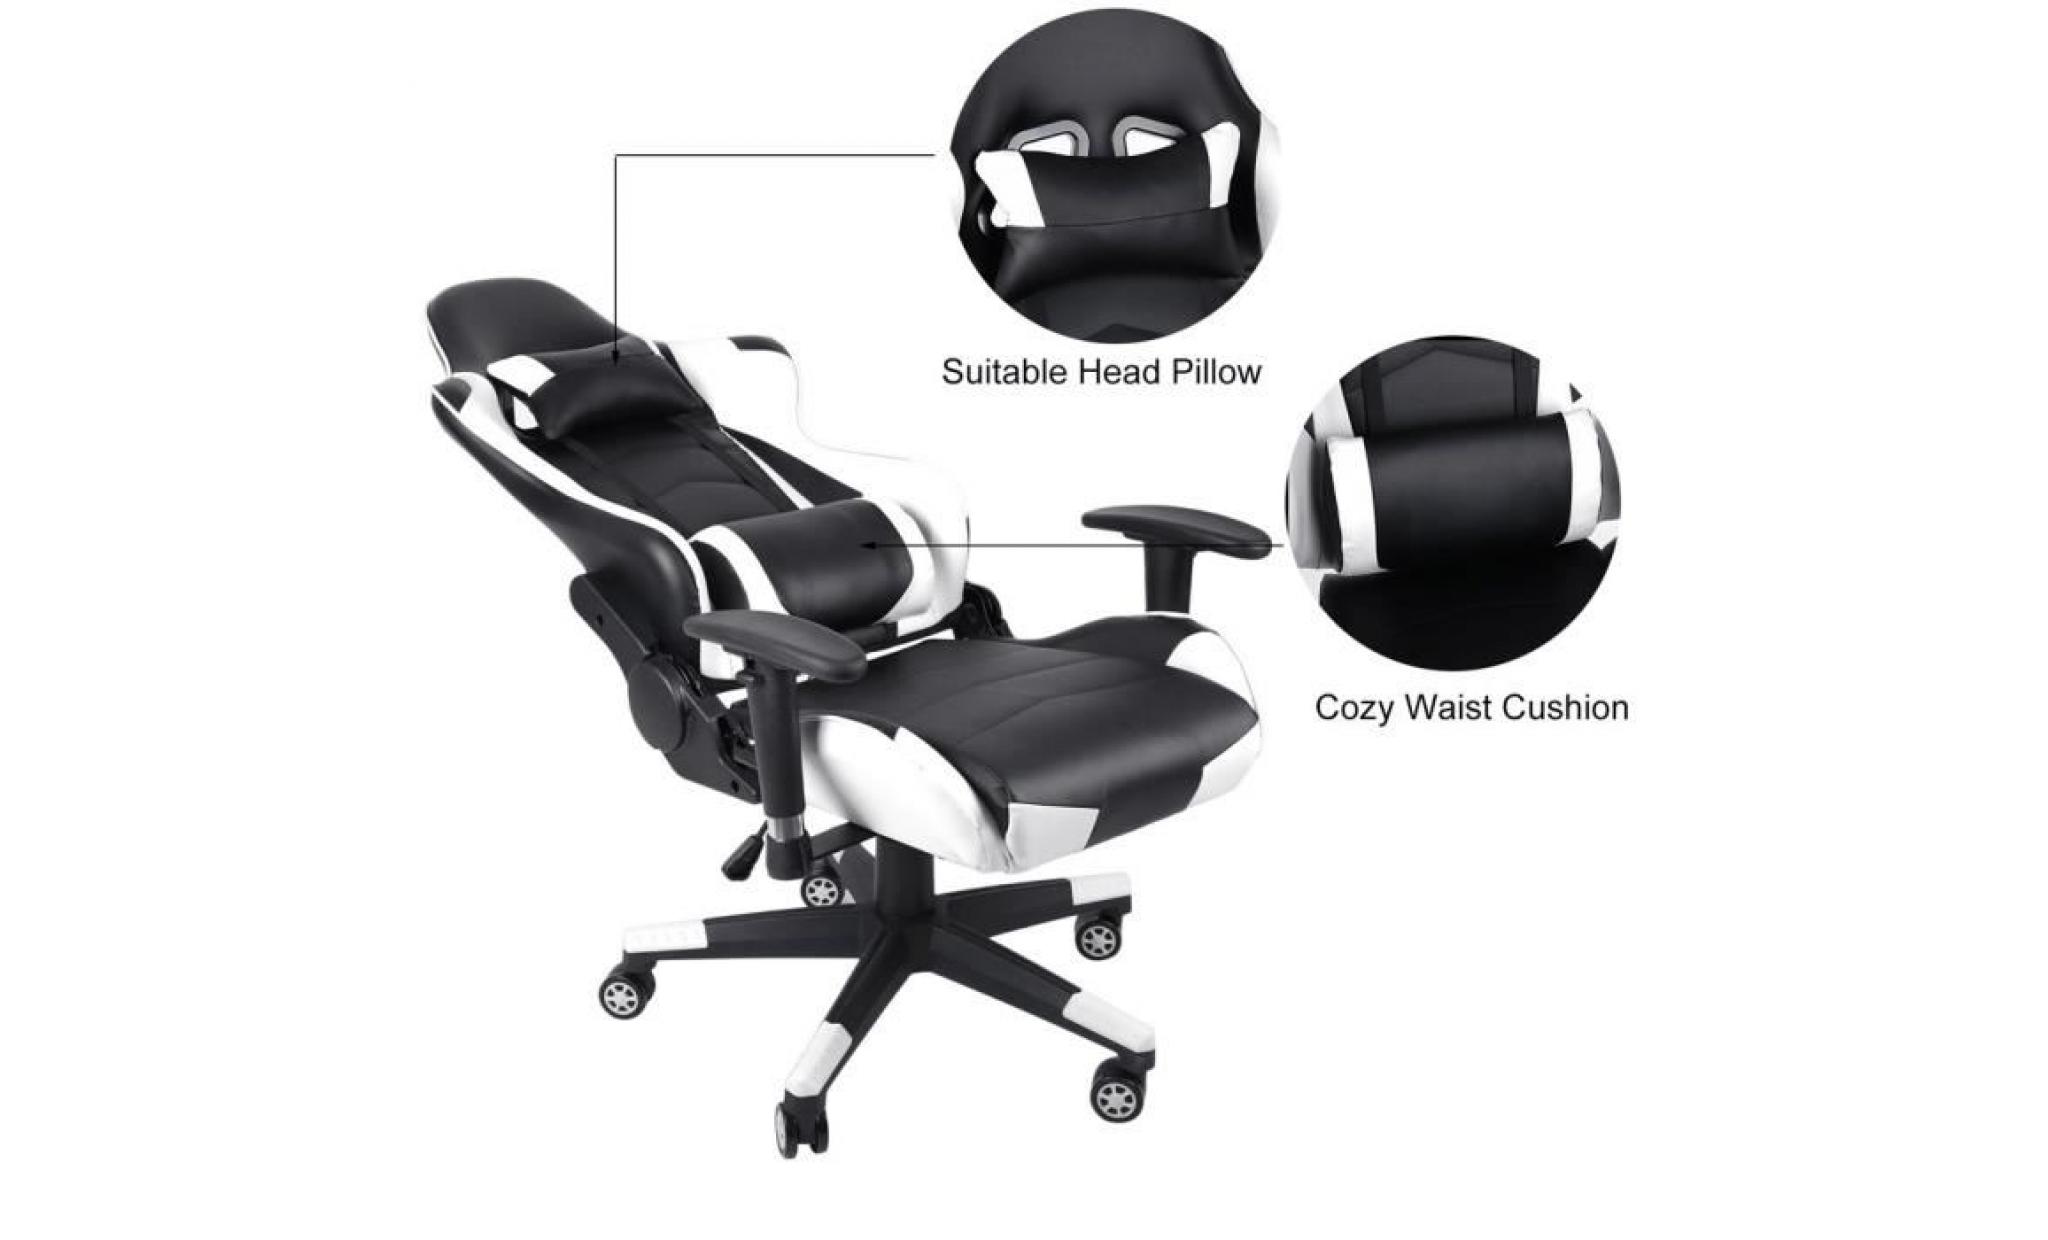 leshp chaise de bureau fauteuil de bureau gaming design baquet   style contemporain   rouge pas cher